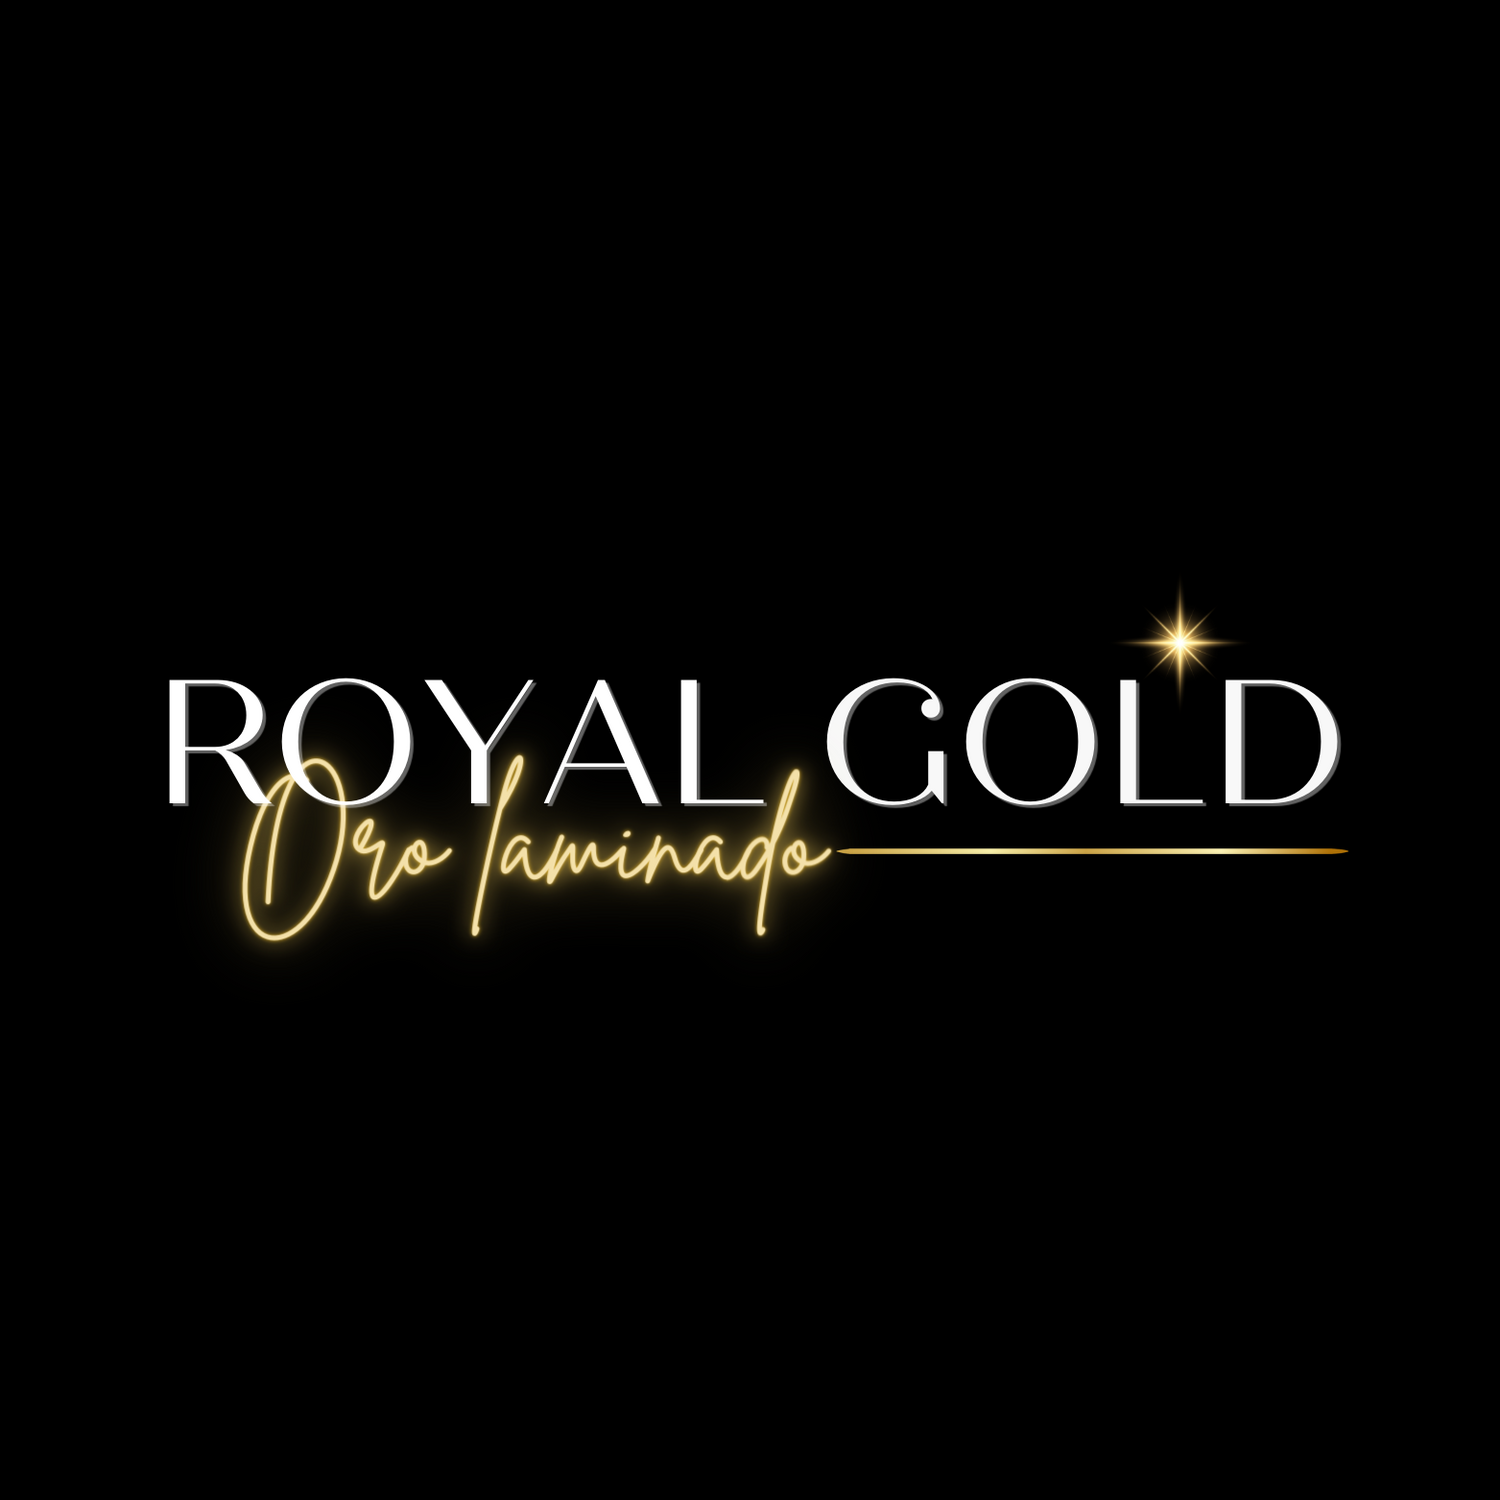 ROYAL GOLD (Oro laminado)